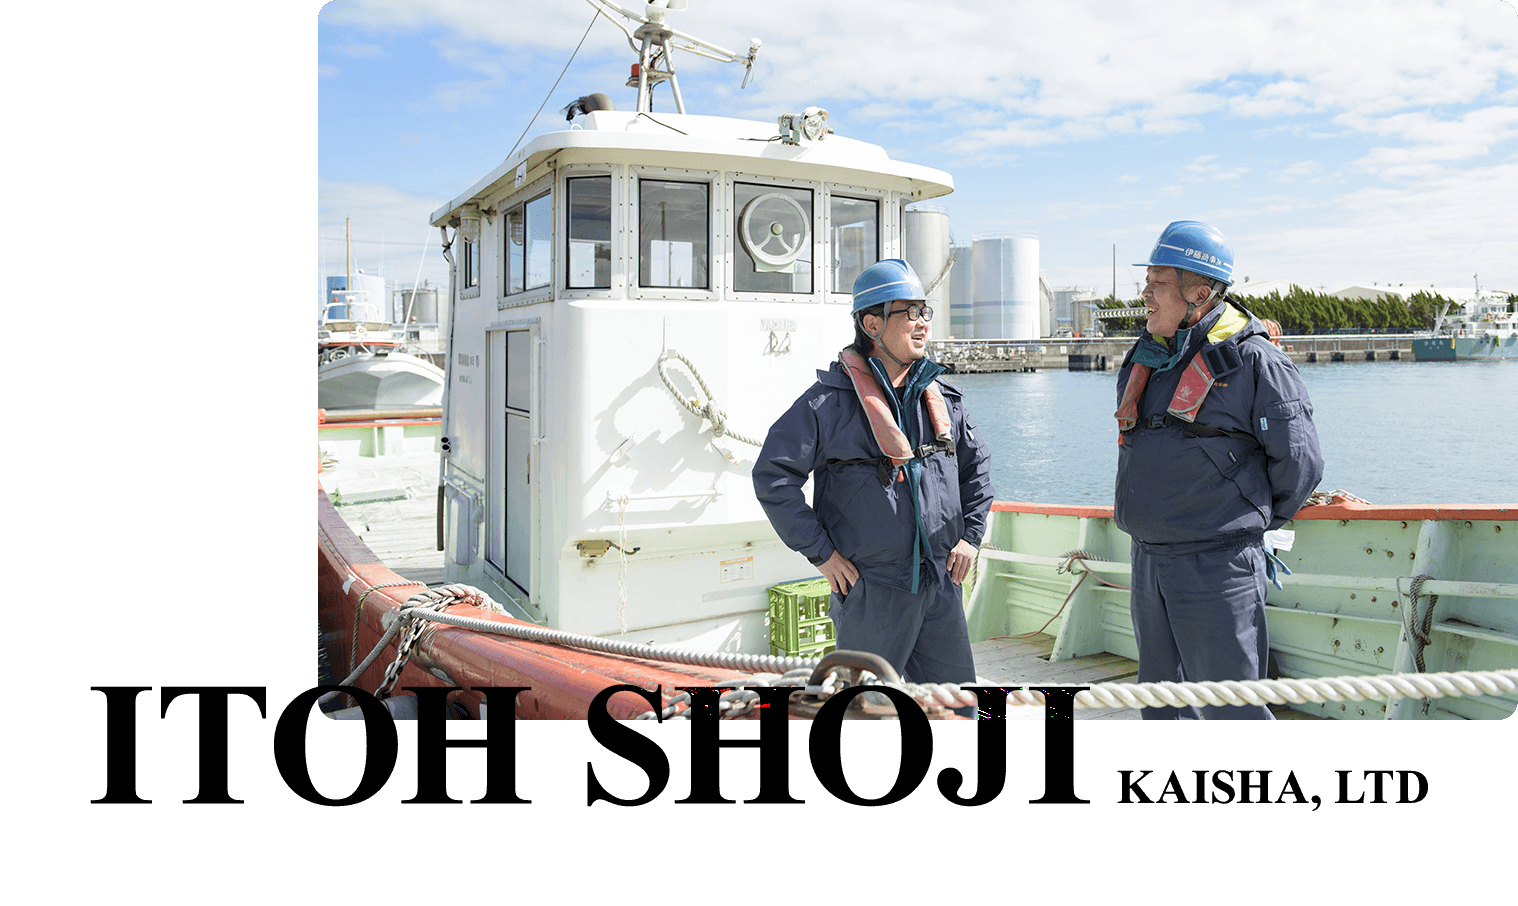 船の上でヘルメットを被った男性二人が笑顔で話している写真